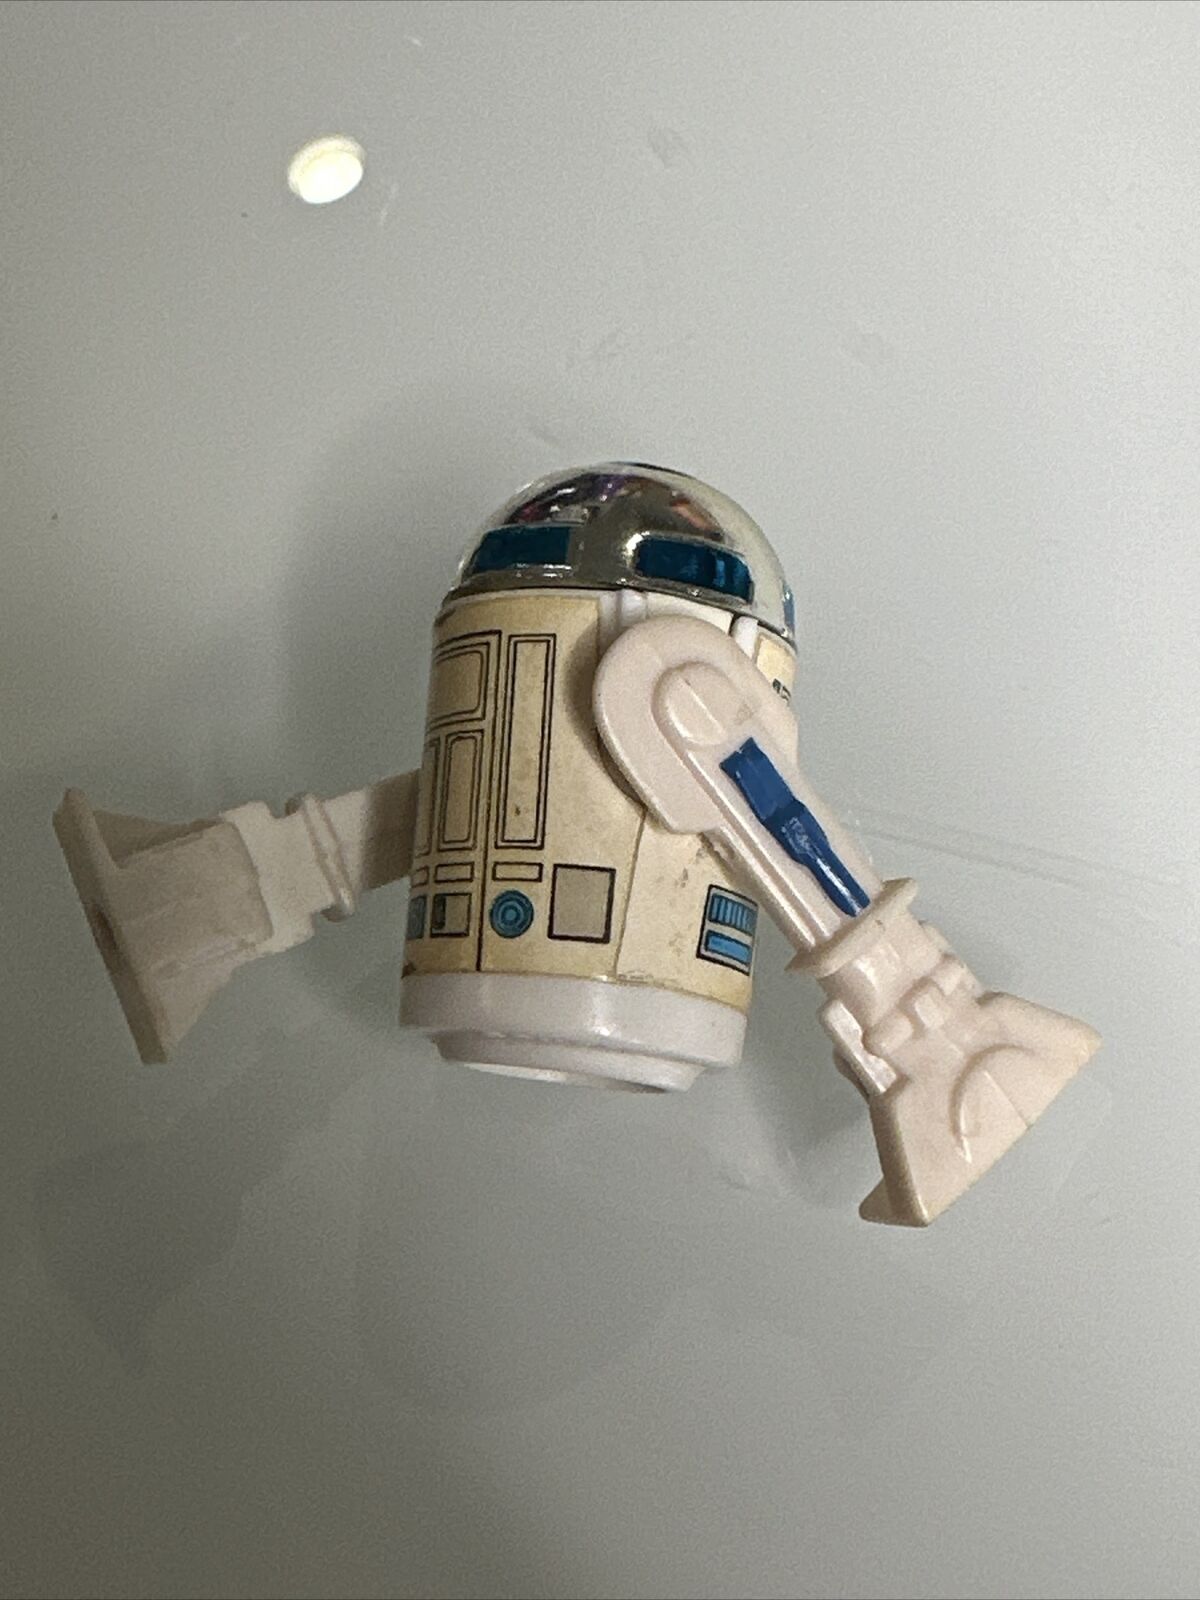 R2-D2 (Artoo-Detoo) (with Sensorscope) sold